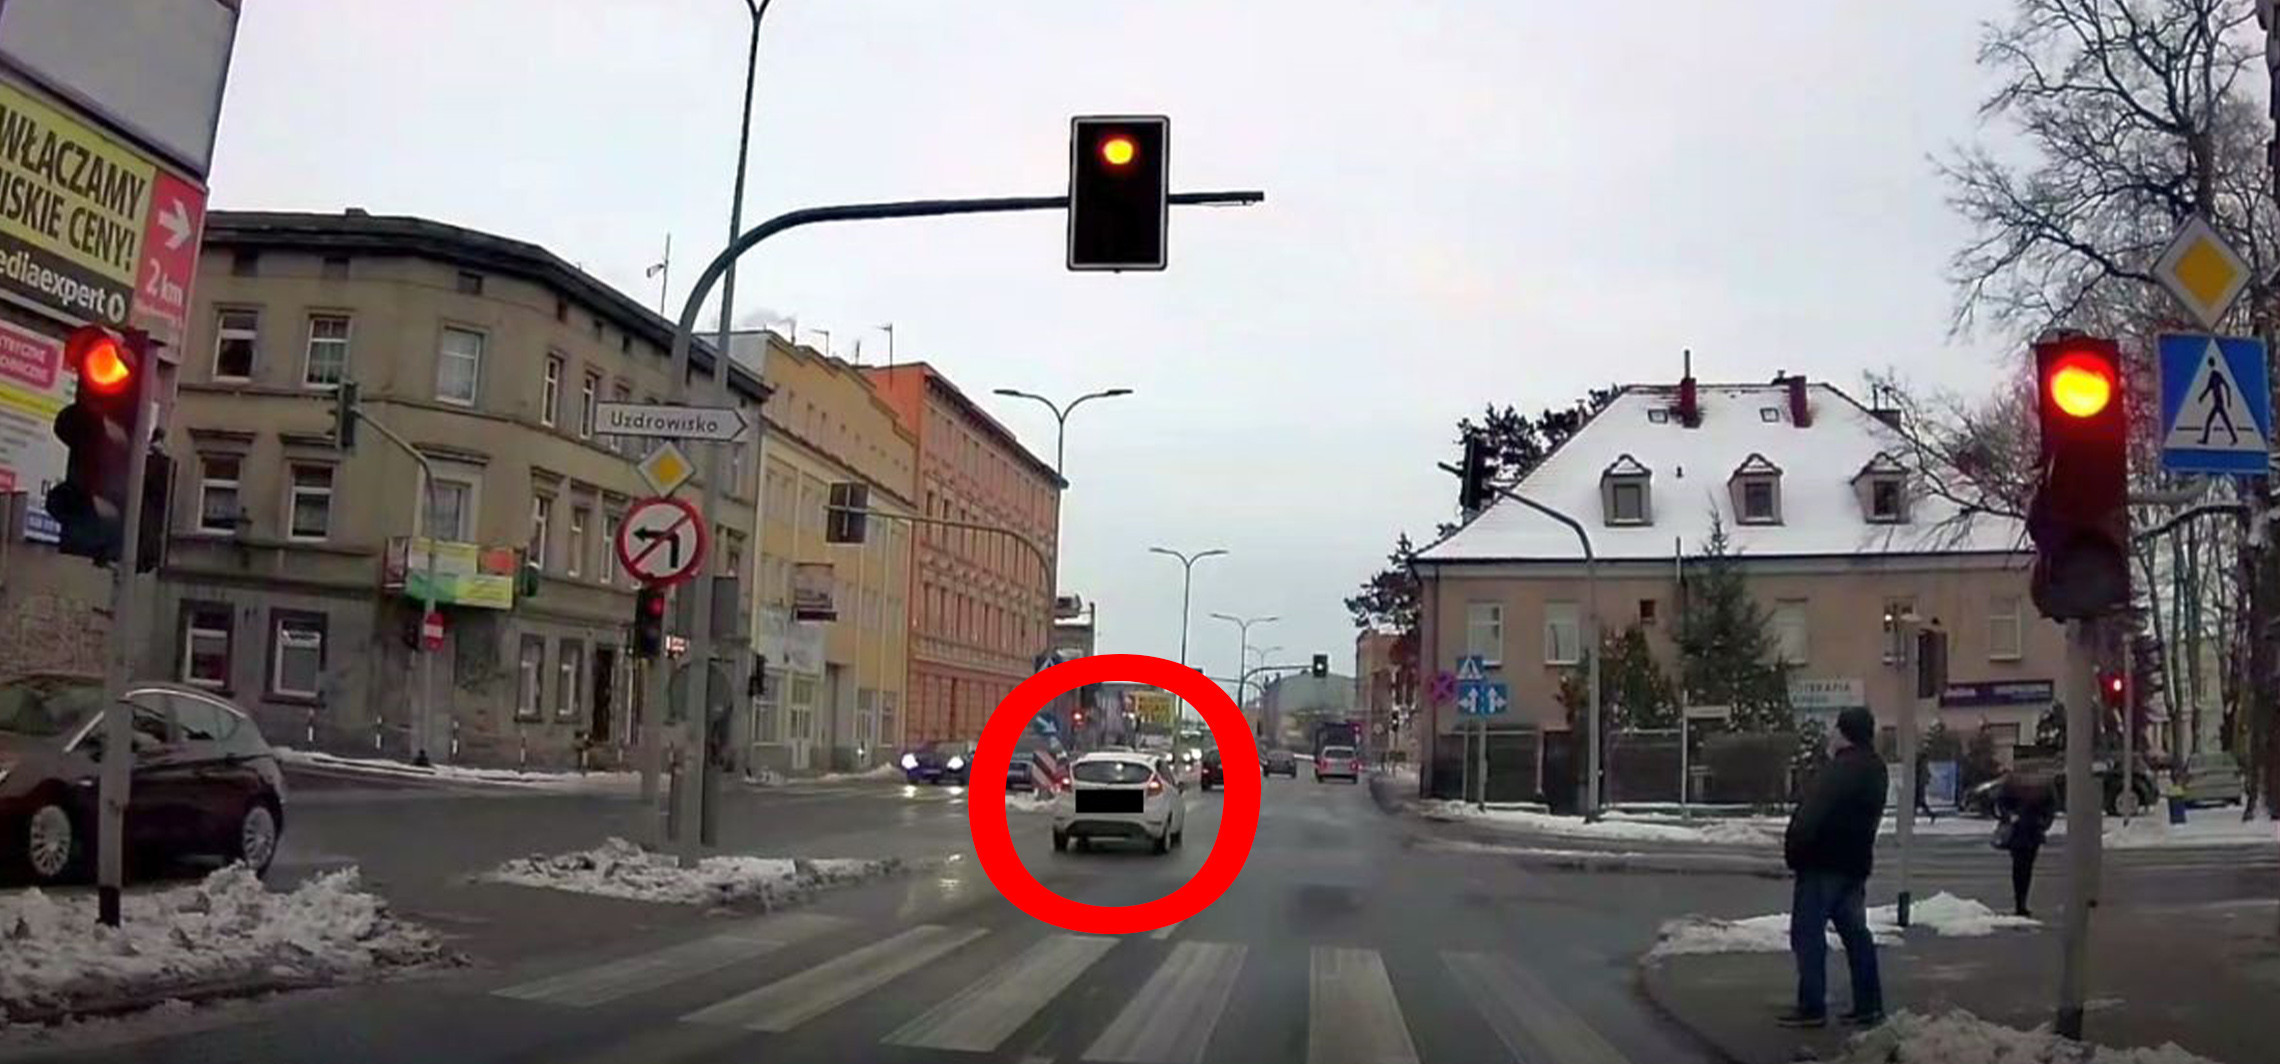 Inowrocław - Przejazd na czerwonym nie uszedł jej na sucho, bo inny kierowca wysłał nagranie policji